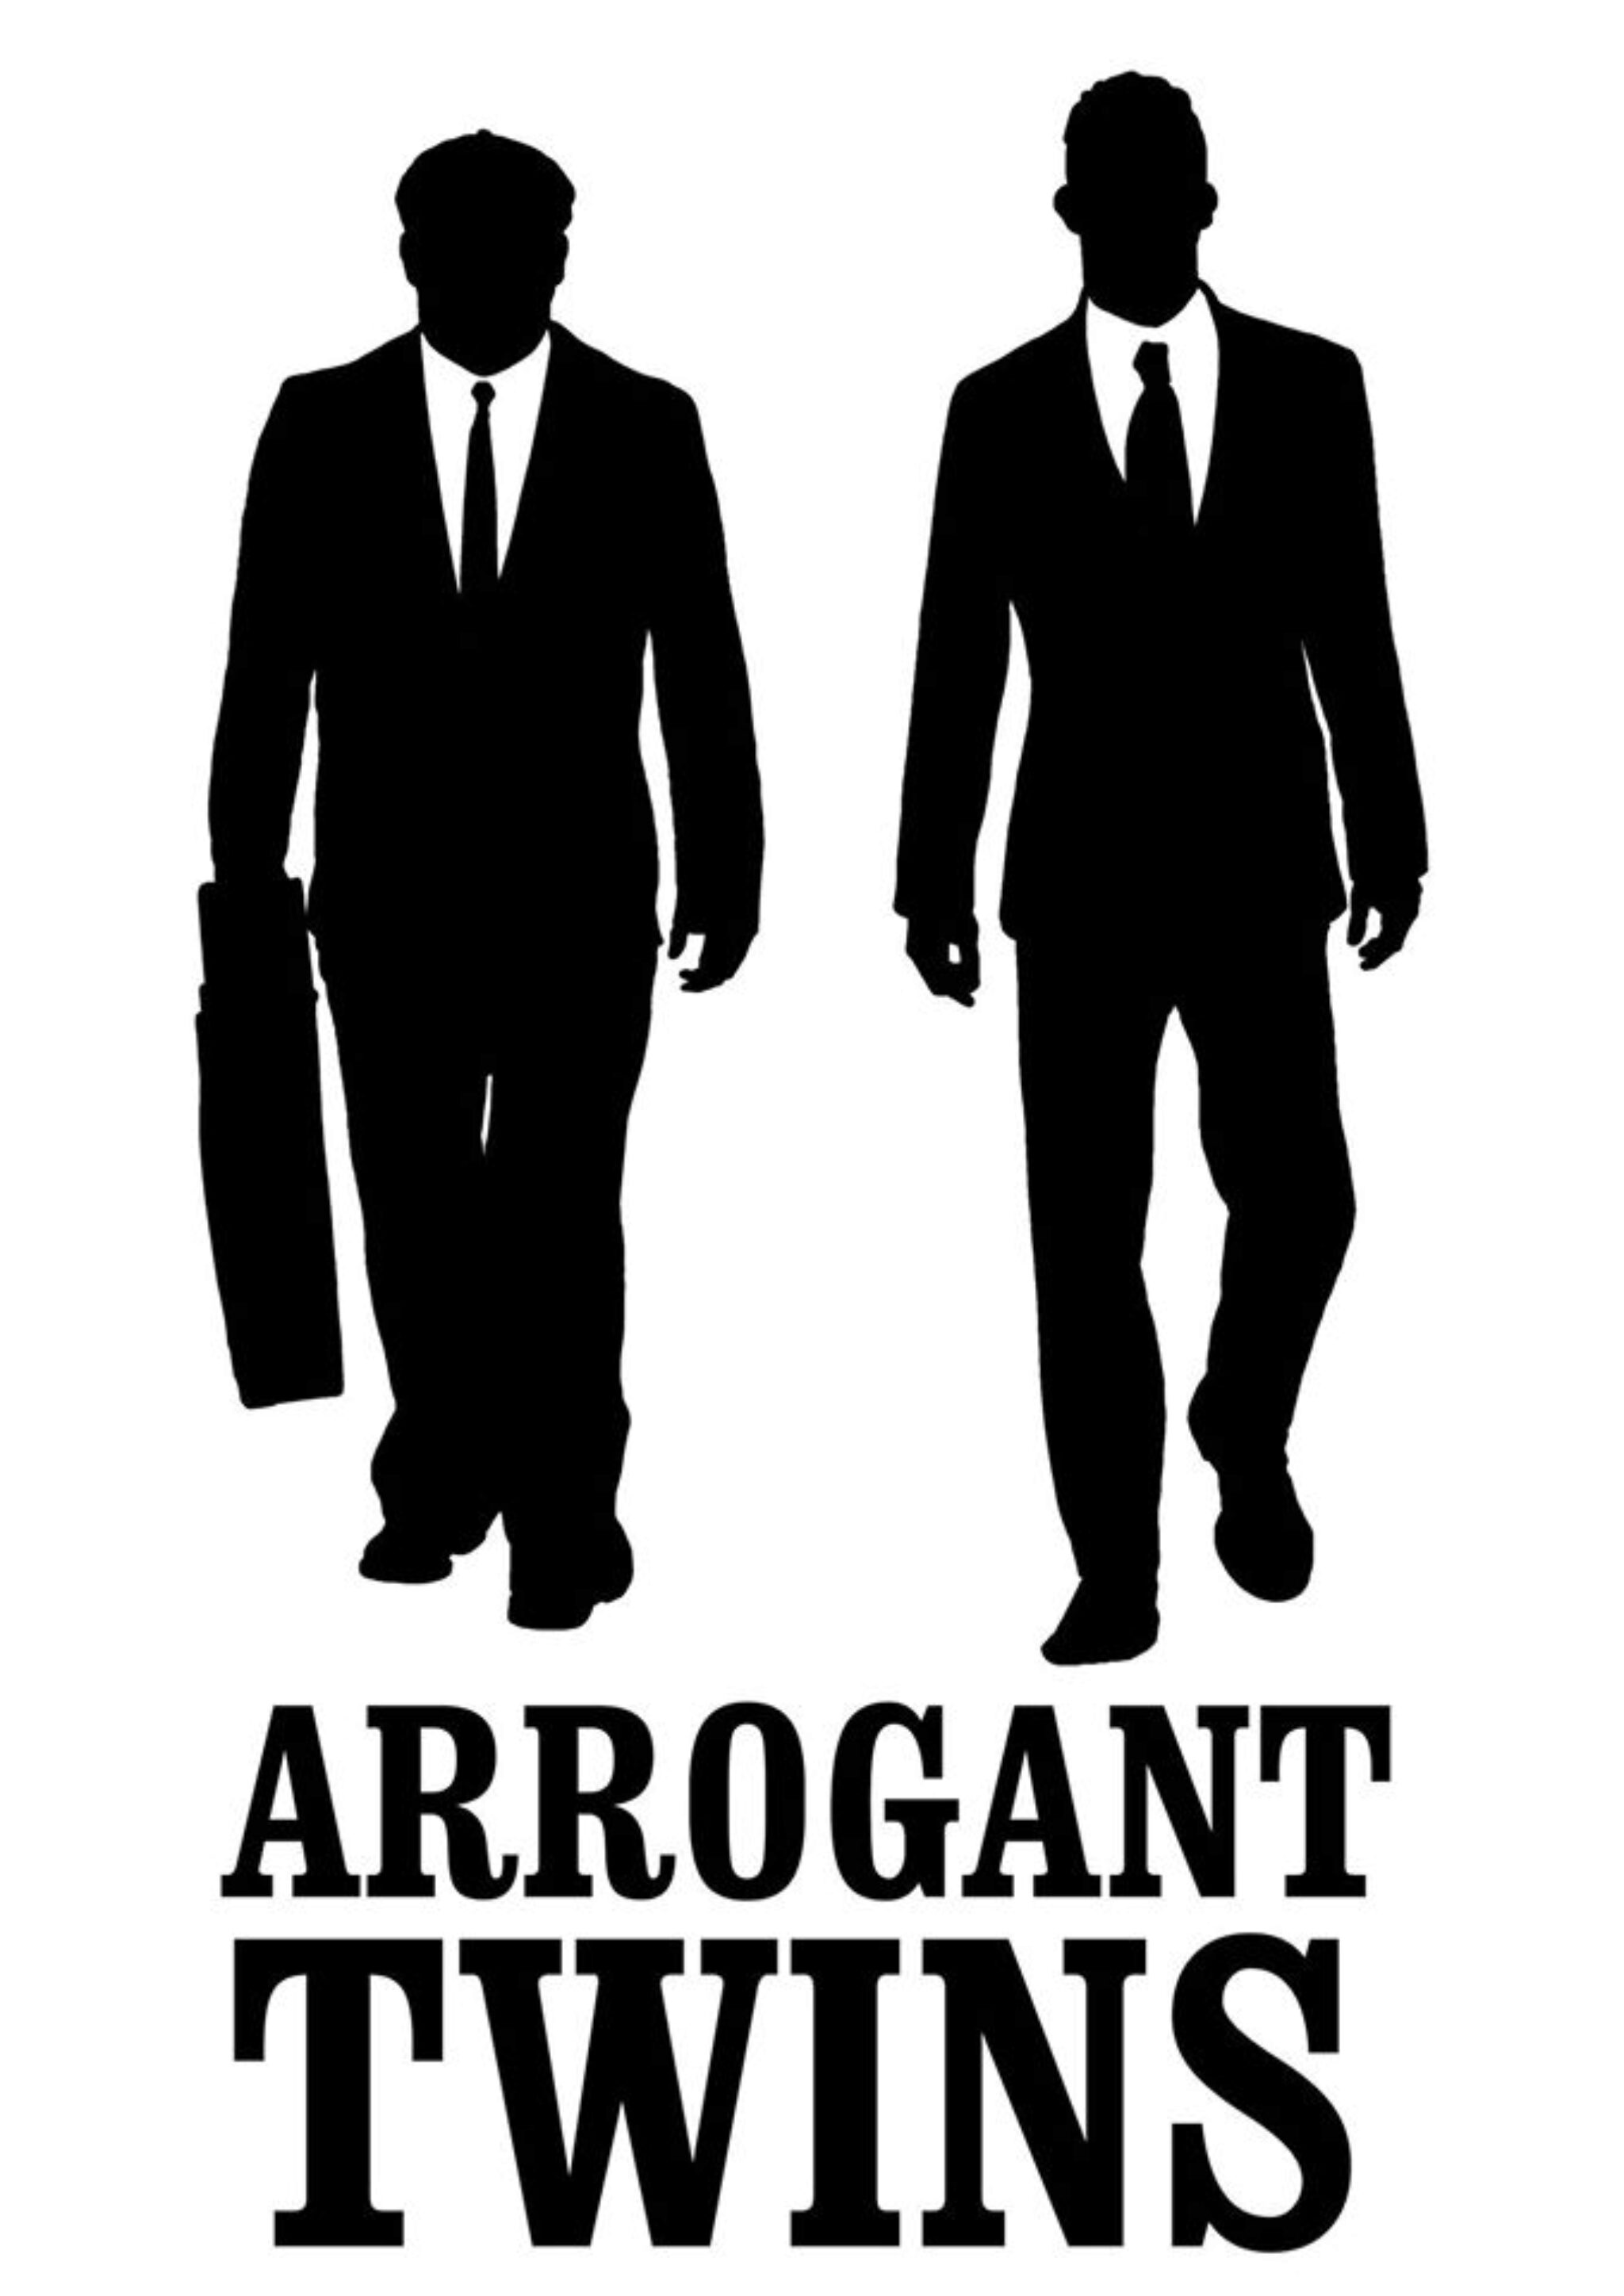 fotka Arrogant Twins číslo 1.jpg